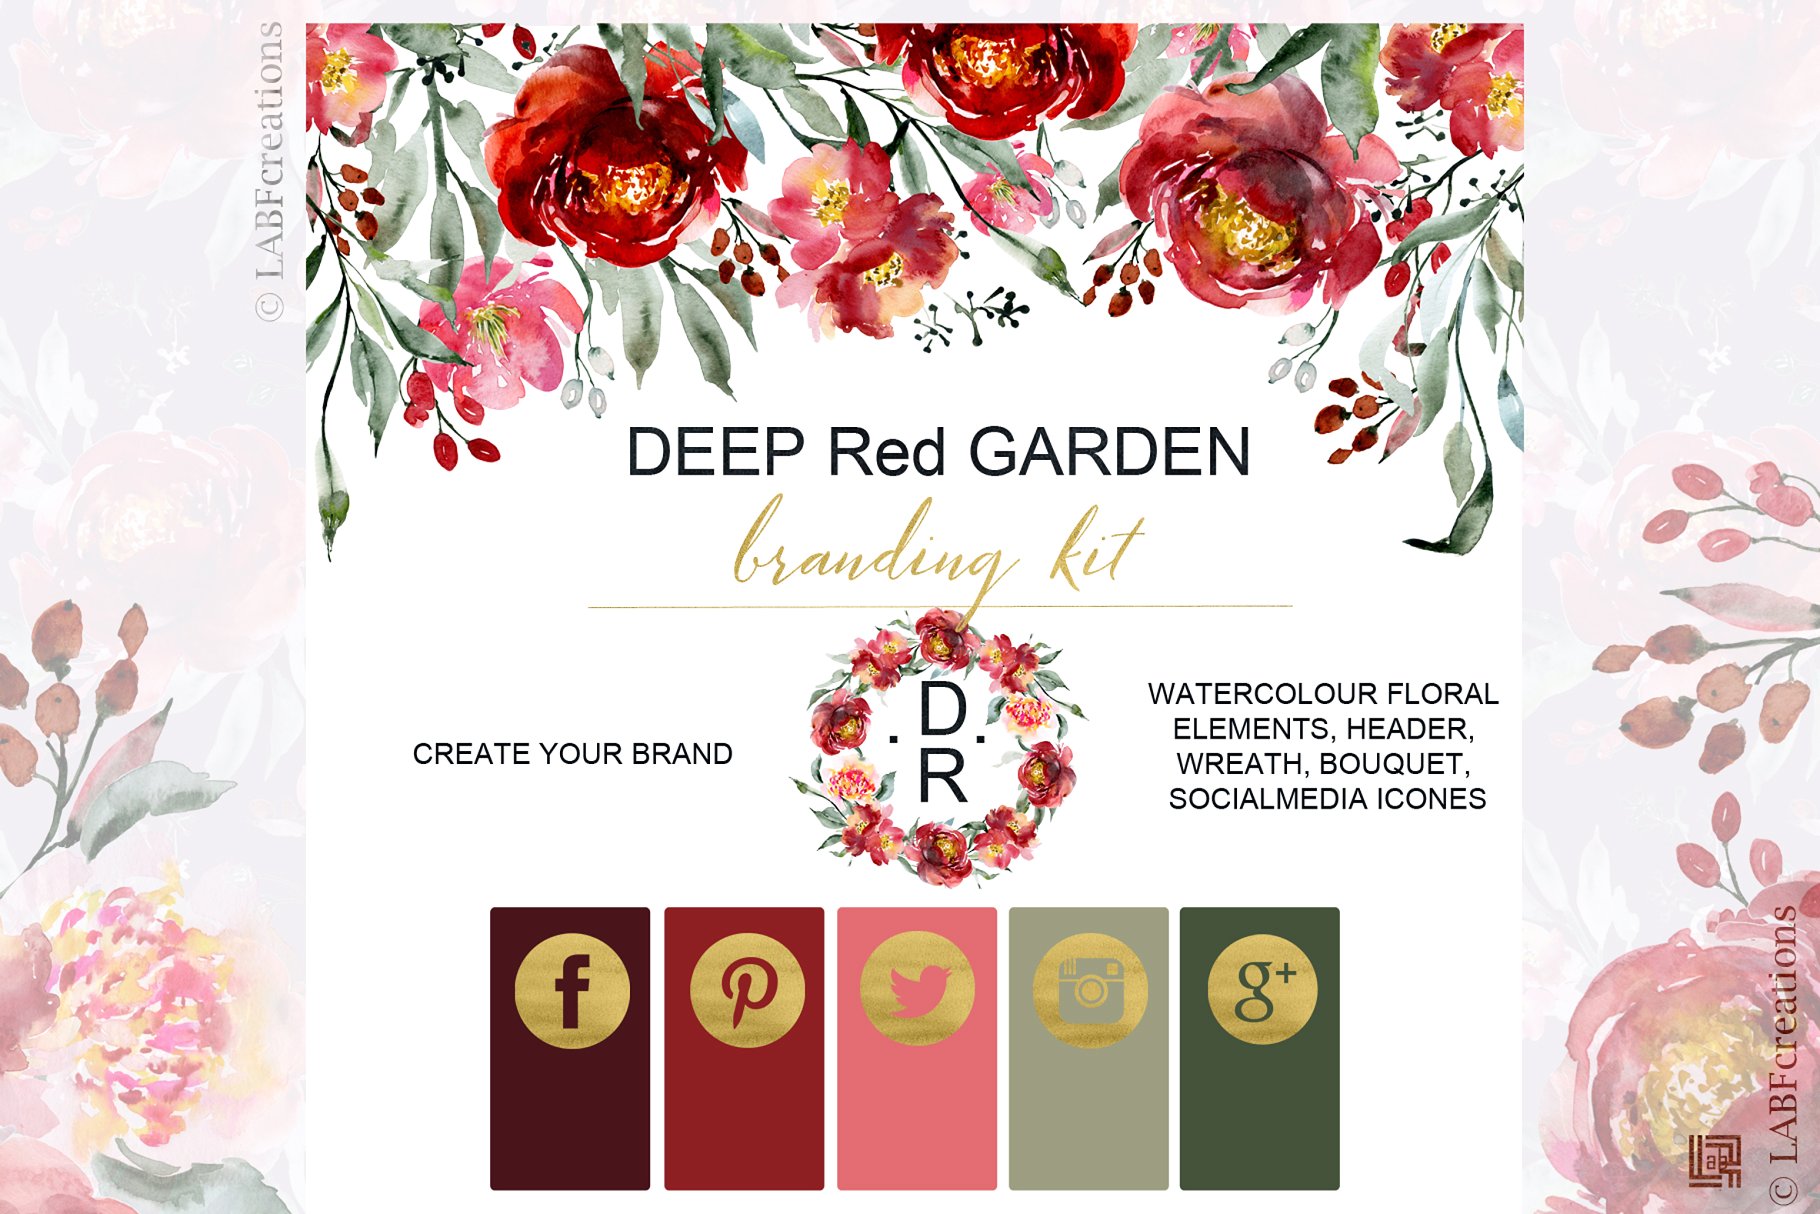 深红色水彩花卉元素 Deep red garden. Branding kit.插图